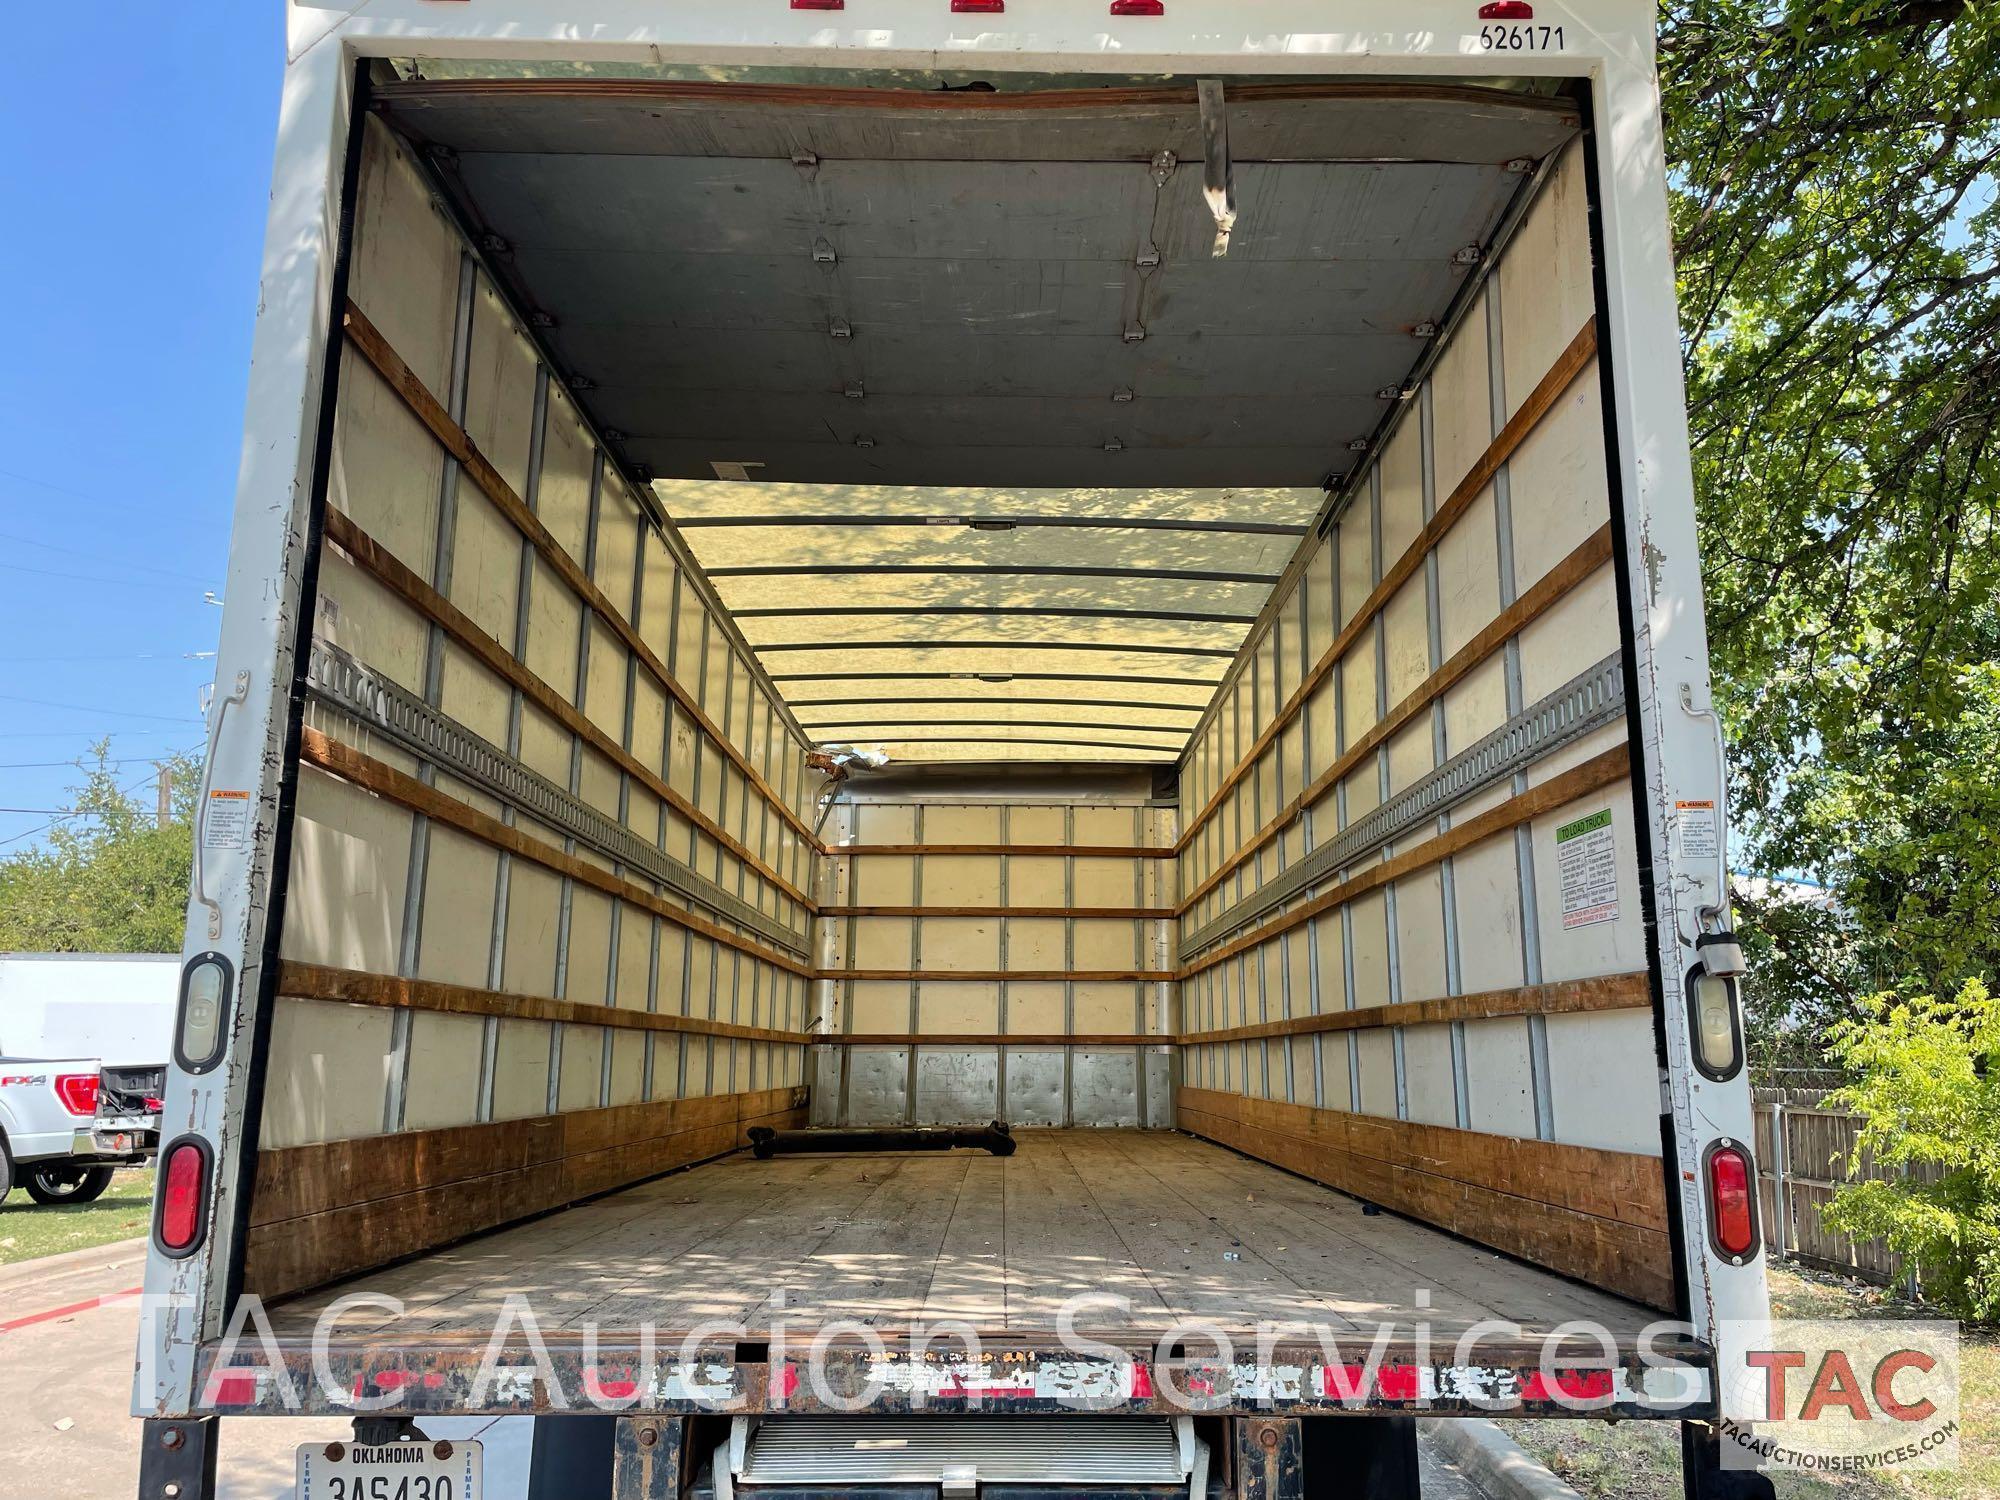 2016 Freightliner M2 Box Truck